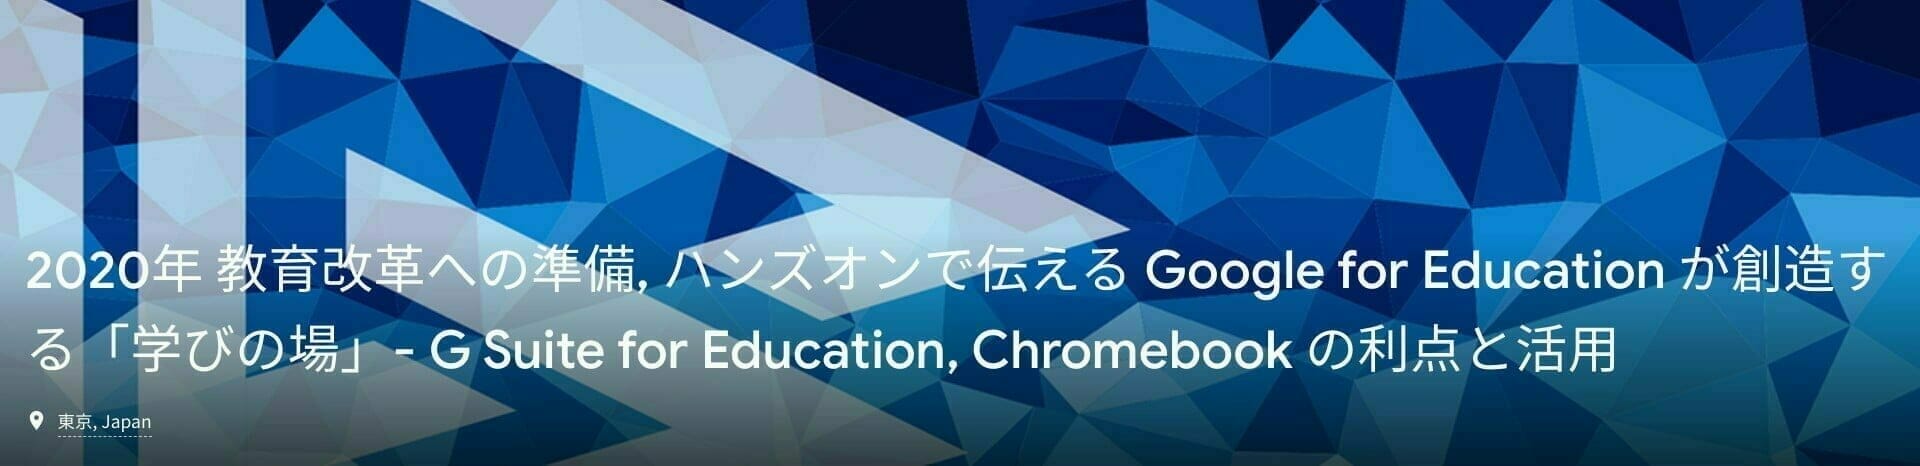 2020年 教育改革への準備, ハンズオンで伝える Google for Education が創造する「学びの場」- G Suite for Education, Chromebook の利点と活用